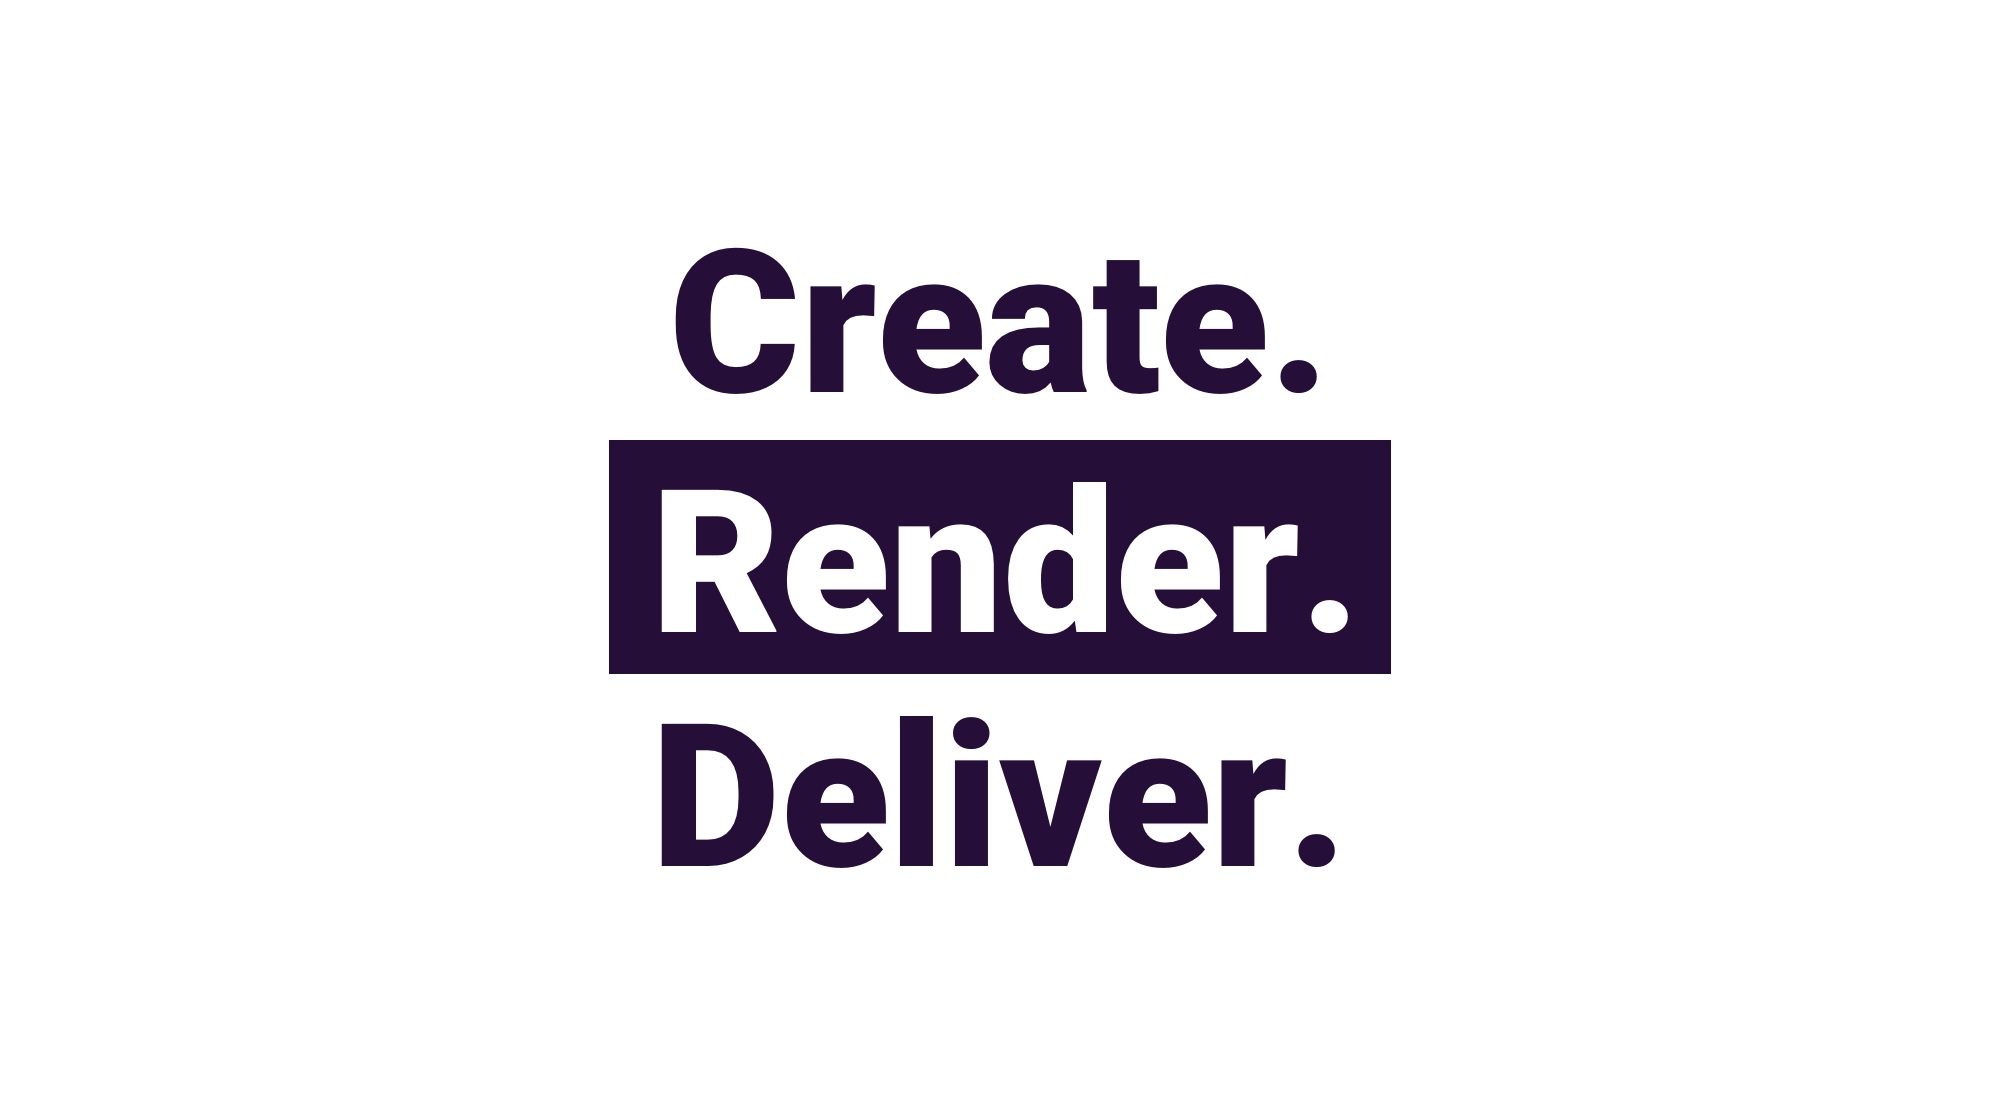 Render Cloud, Blender & EEVEE Job Submission